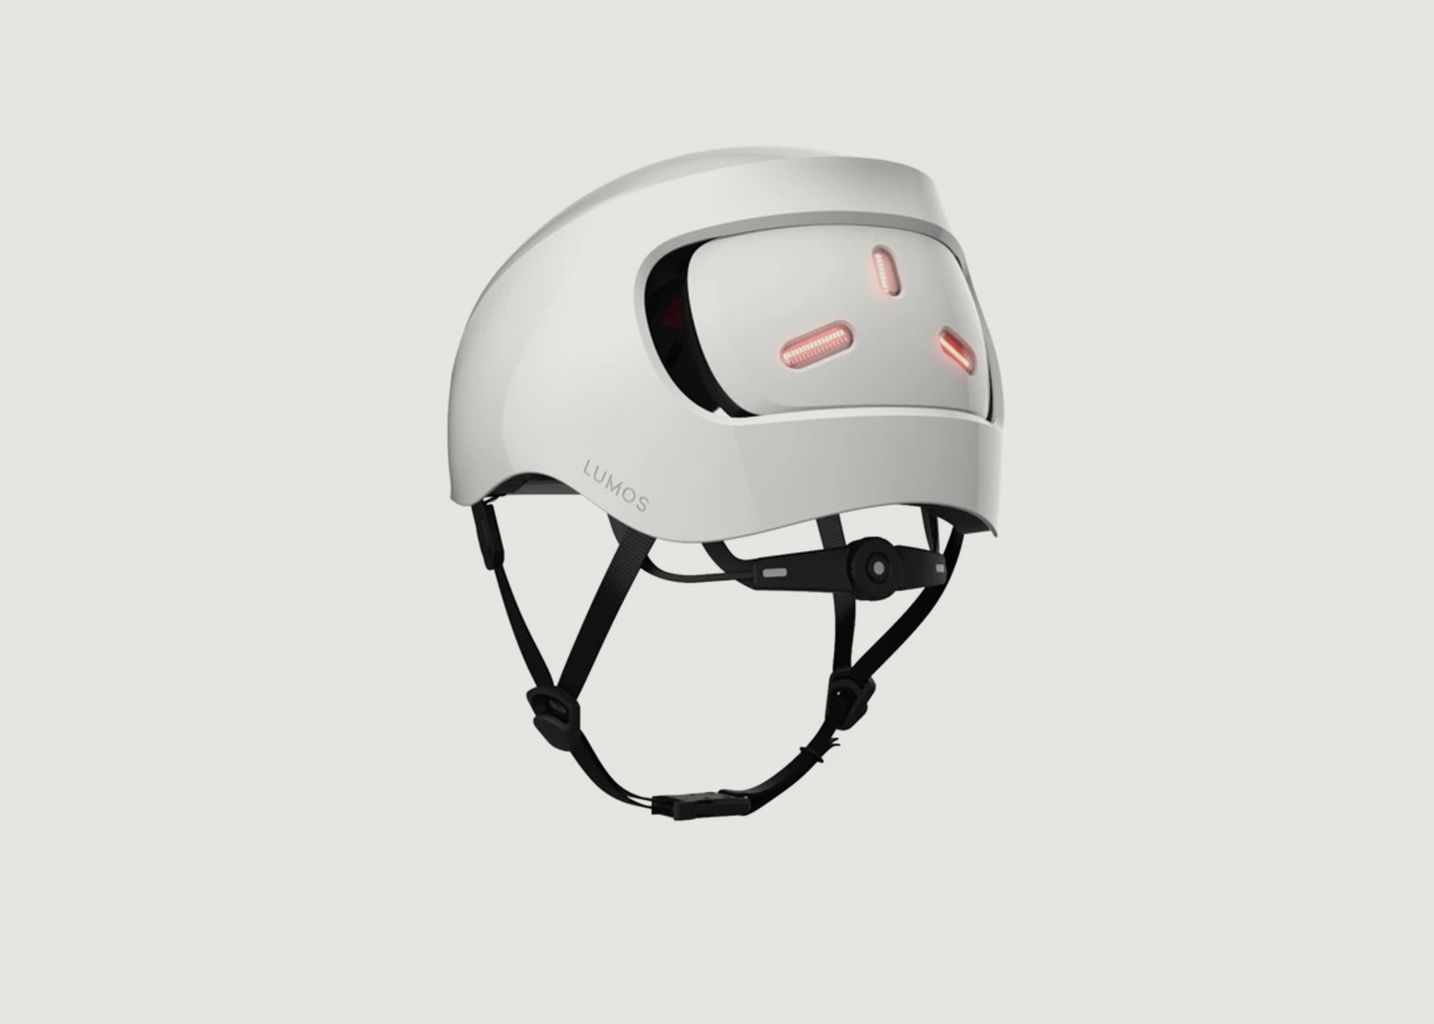 Lumos Straßenhelm - Lumos Helmet